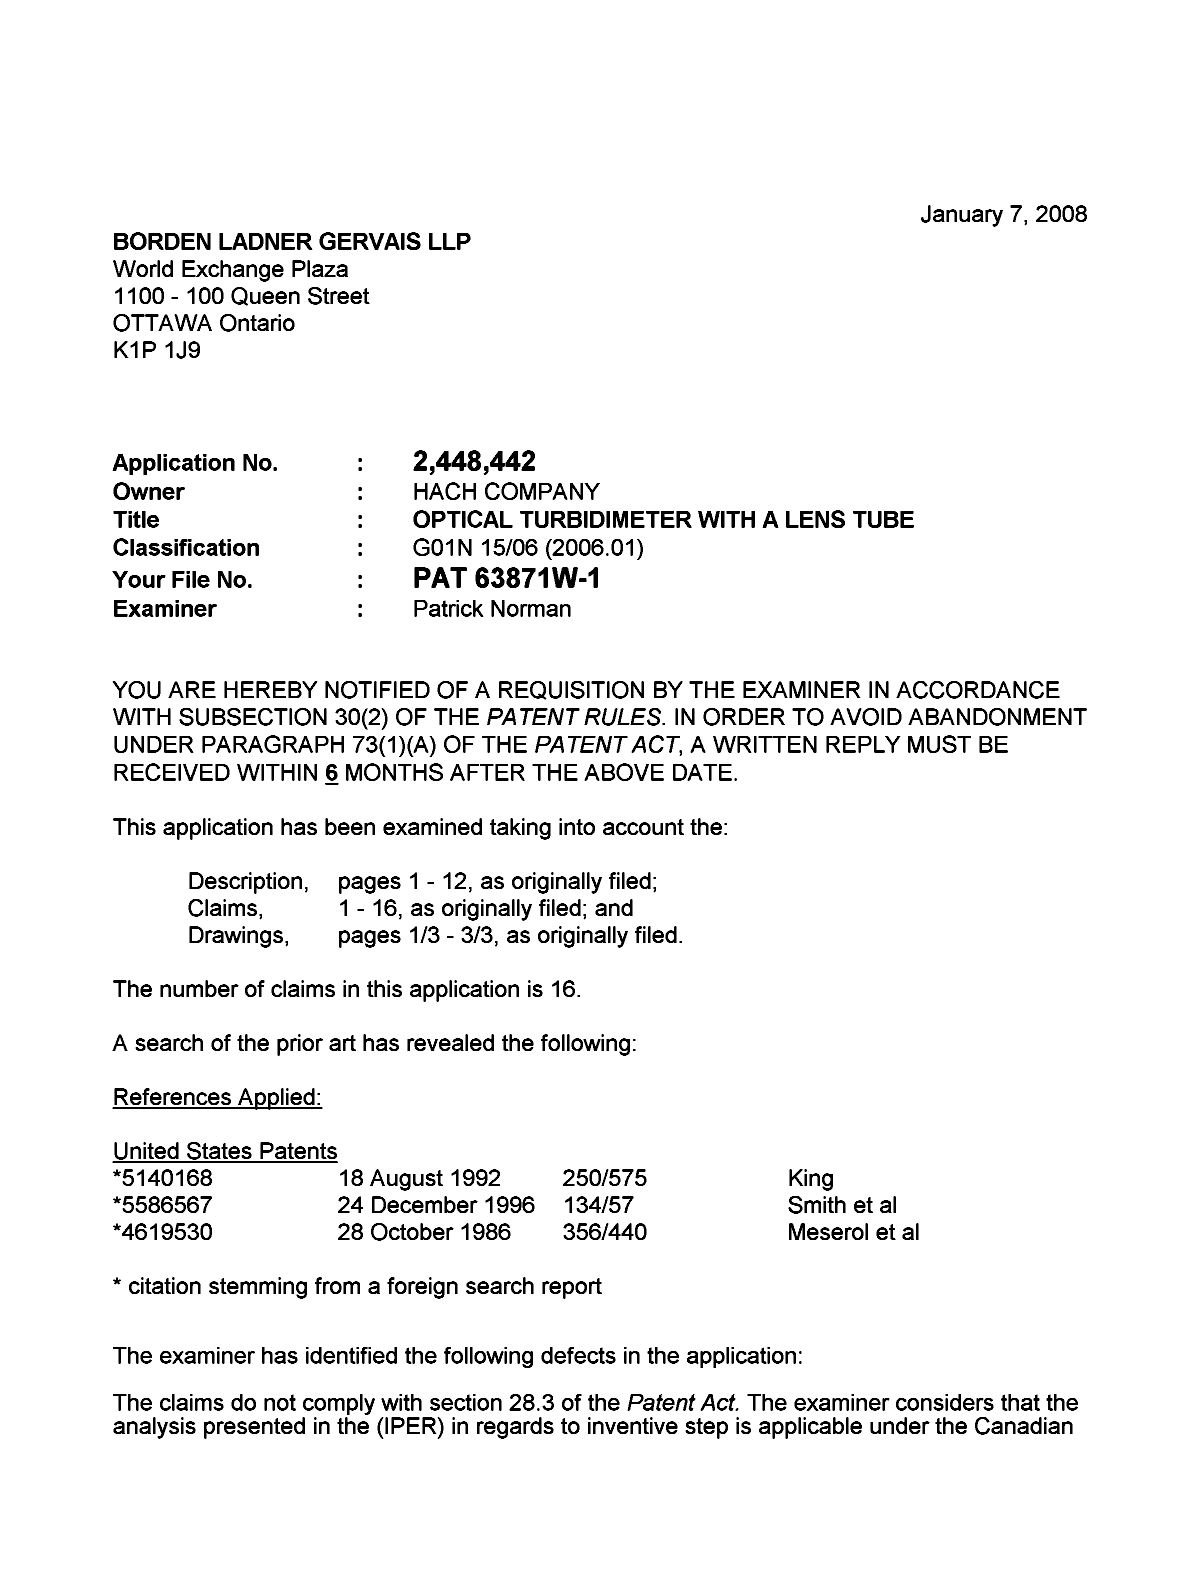 Document de brevet canadien 2448442. Poursuite-Amendment 20080107. Image 1 de 2